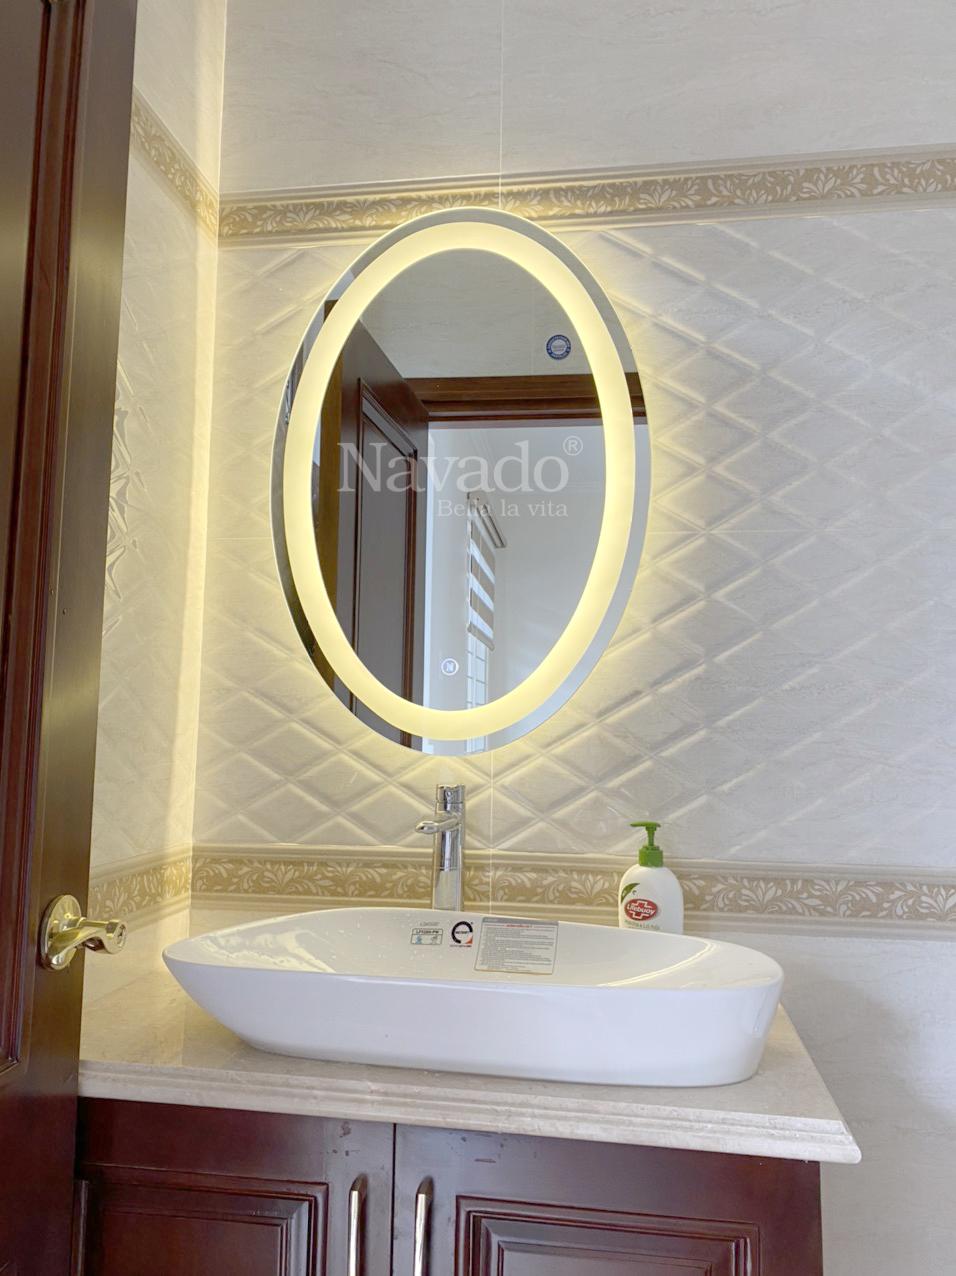 Gương Elip phòng tắm đèn Led Hà Nội: Tận hưởng không gian phòng tắm tươi sáng với gương Elip phòng tắm đèn LED Hà Nội. Với thiết kế hiện đại và vẻ đẹp tinh tế, gương LED của chúng tôi không chỉ là một vật dụng bình thường mà còn là một tác phẩm nghệ thuật trang trí phòng tắm của bạn. Với độ sáng tuyệt vời và độ bền cao, gương đèn LED Elip phòng tắm của chúng tôi sẽ đáp ứng được mọi nhu cầu sử dụng của bạn.